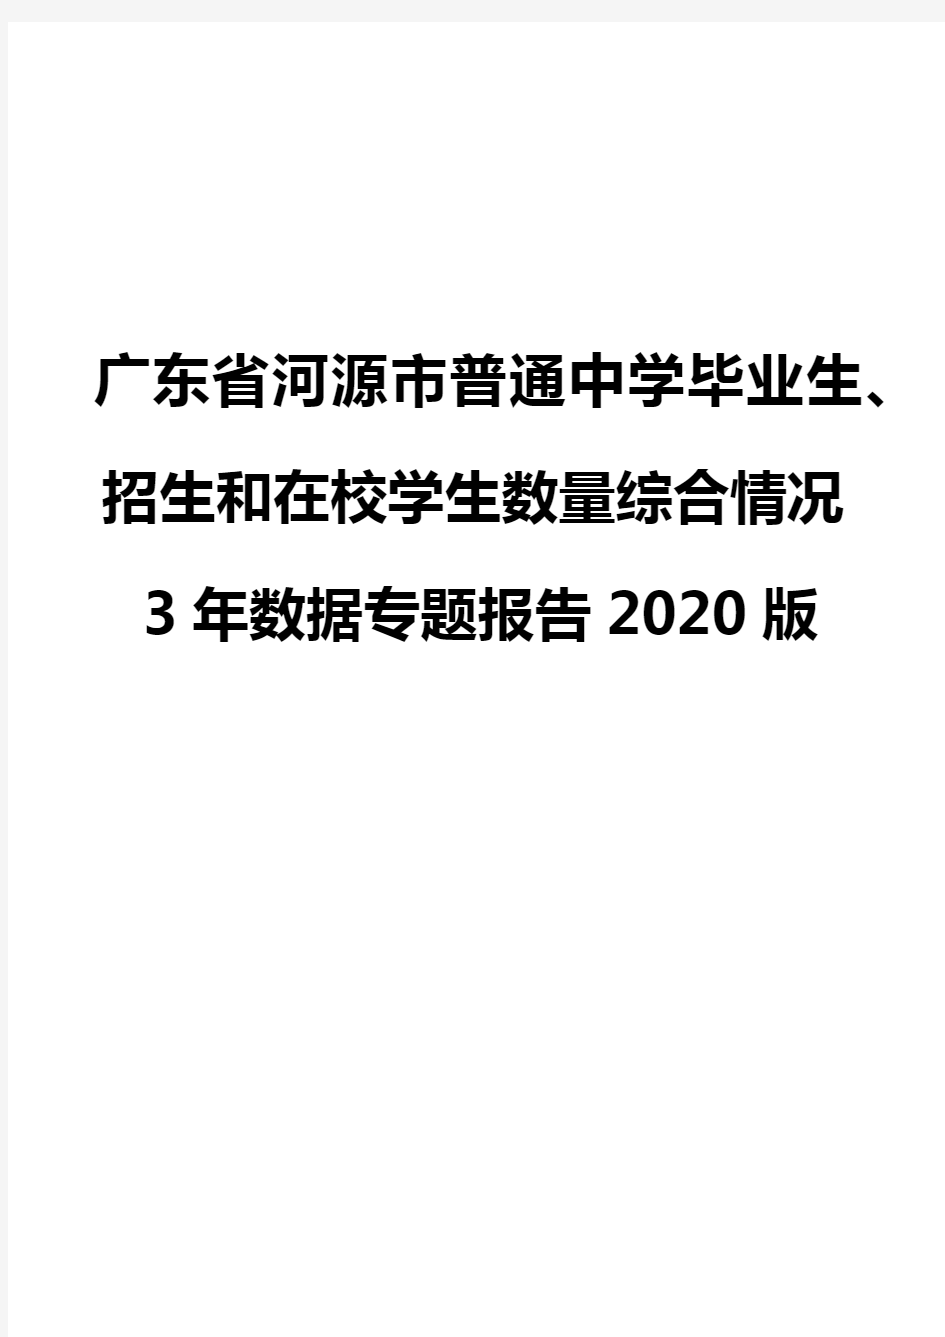 广东省河源市普通中学毕业生、招生和在校学生数量综合情况3年数据专题报告2020版